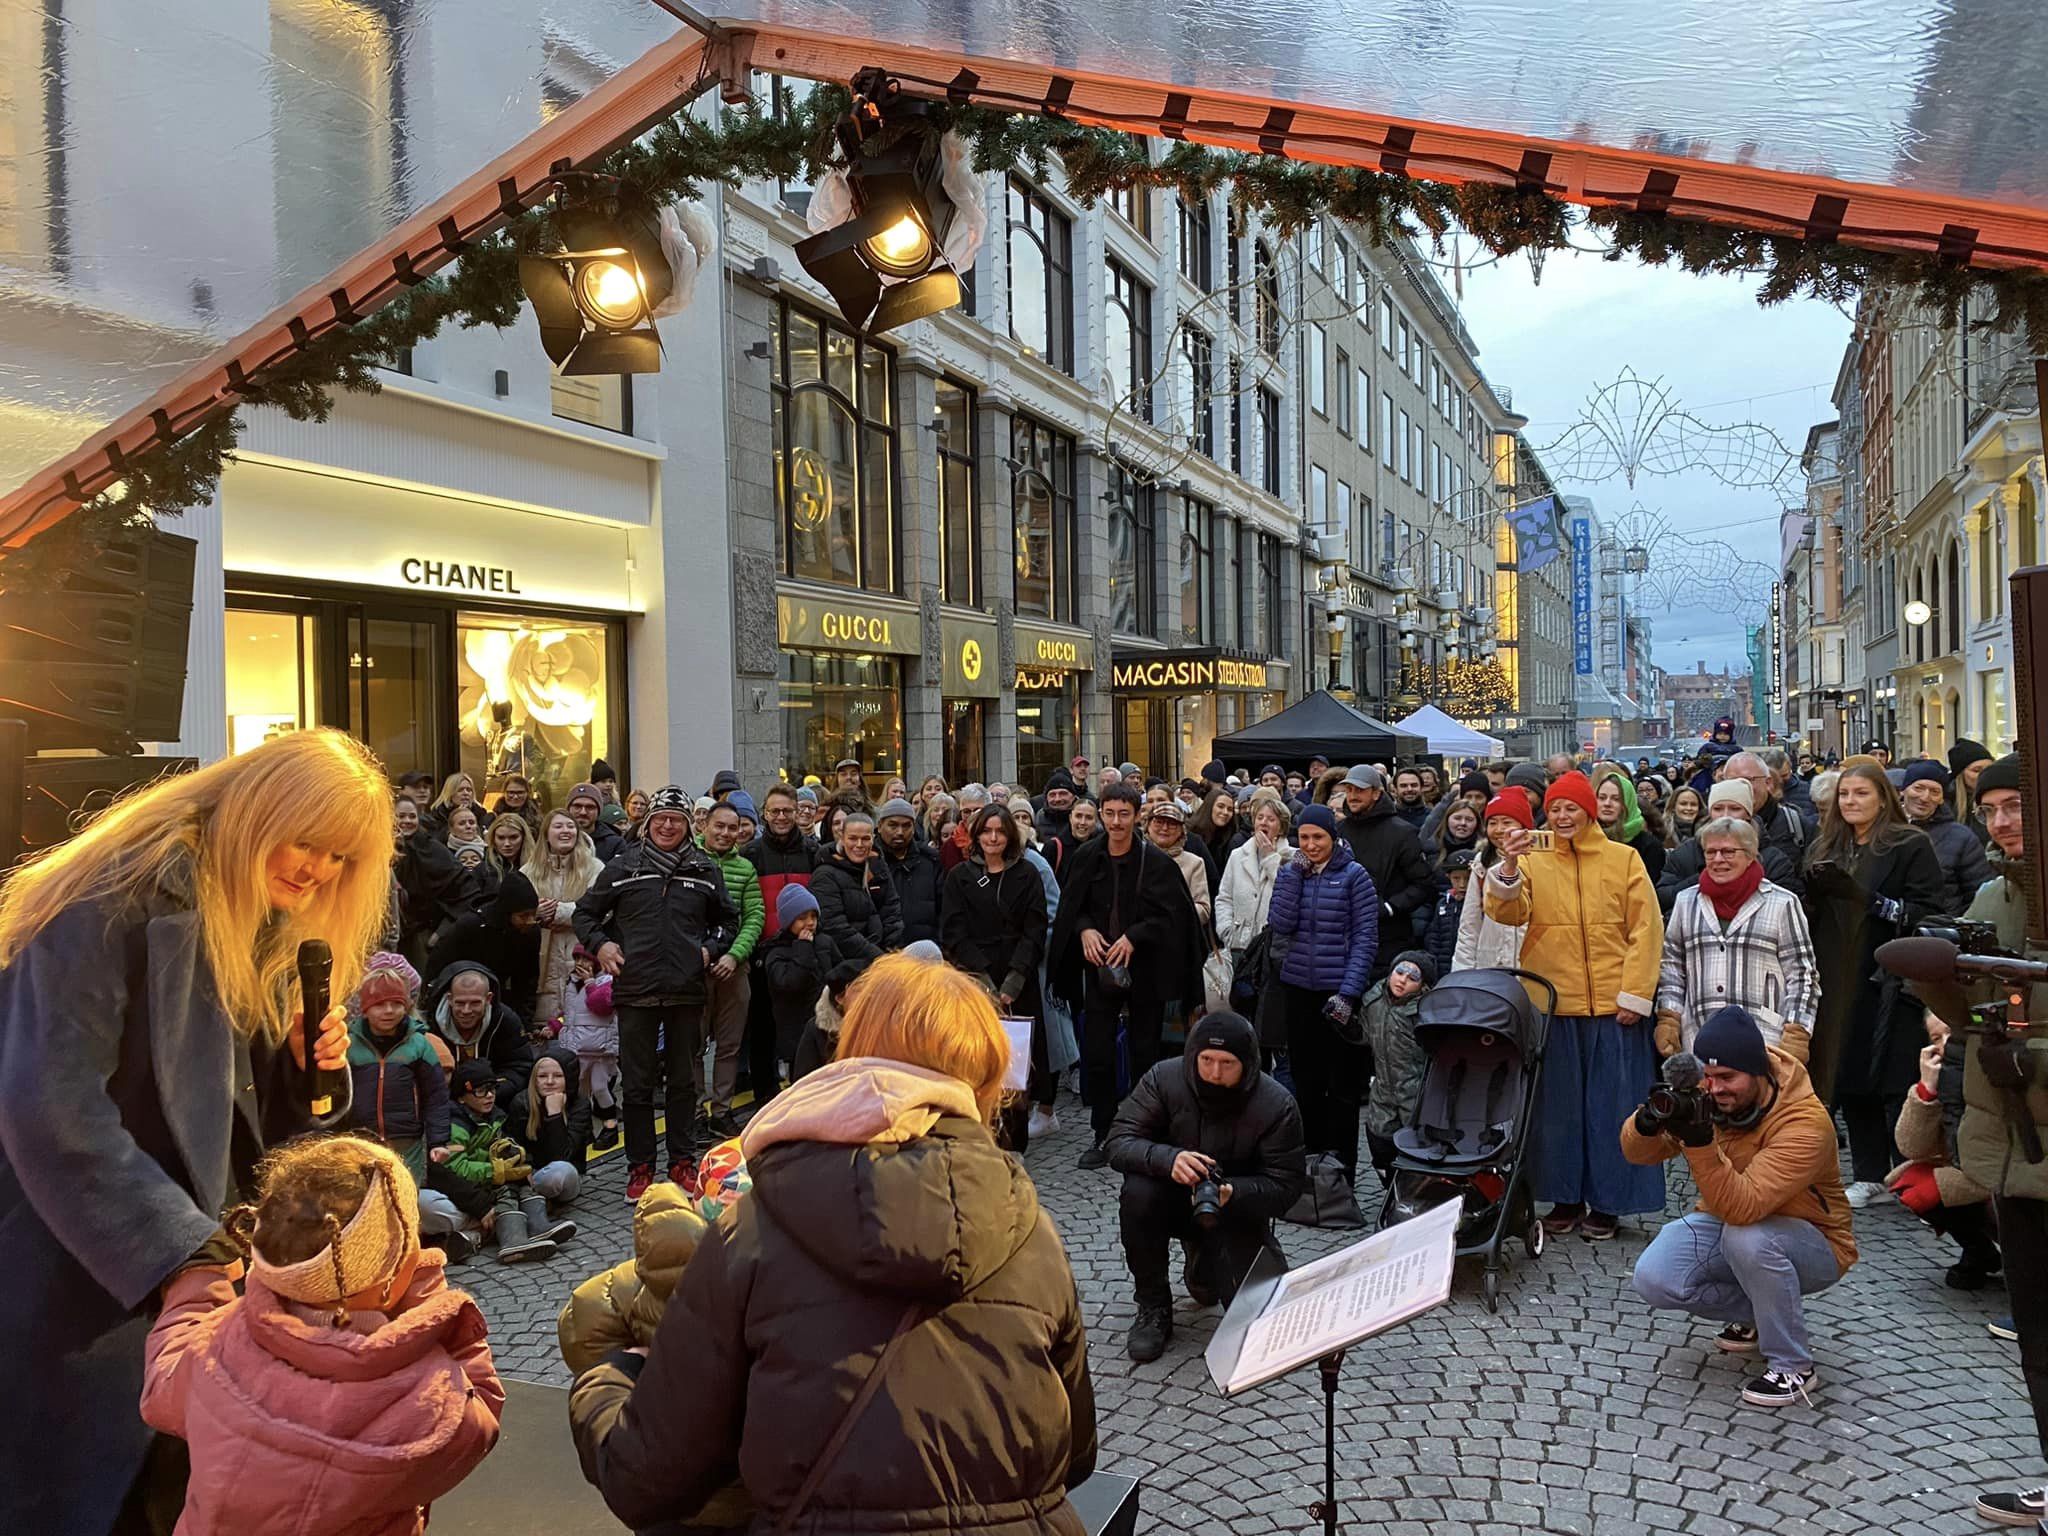 Åpnet julegatene i Oslo